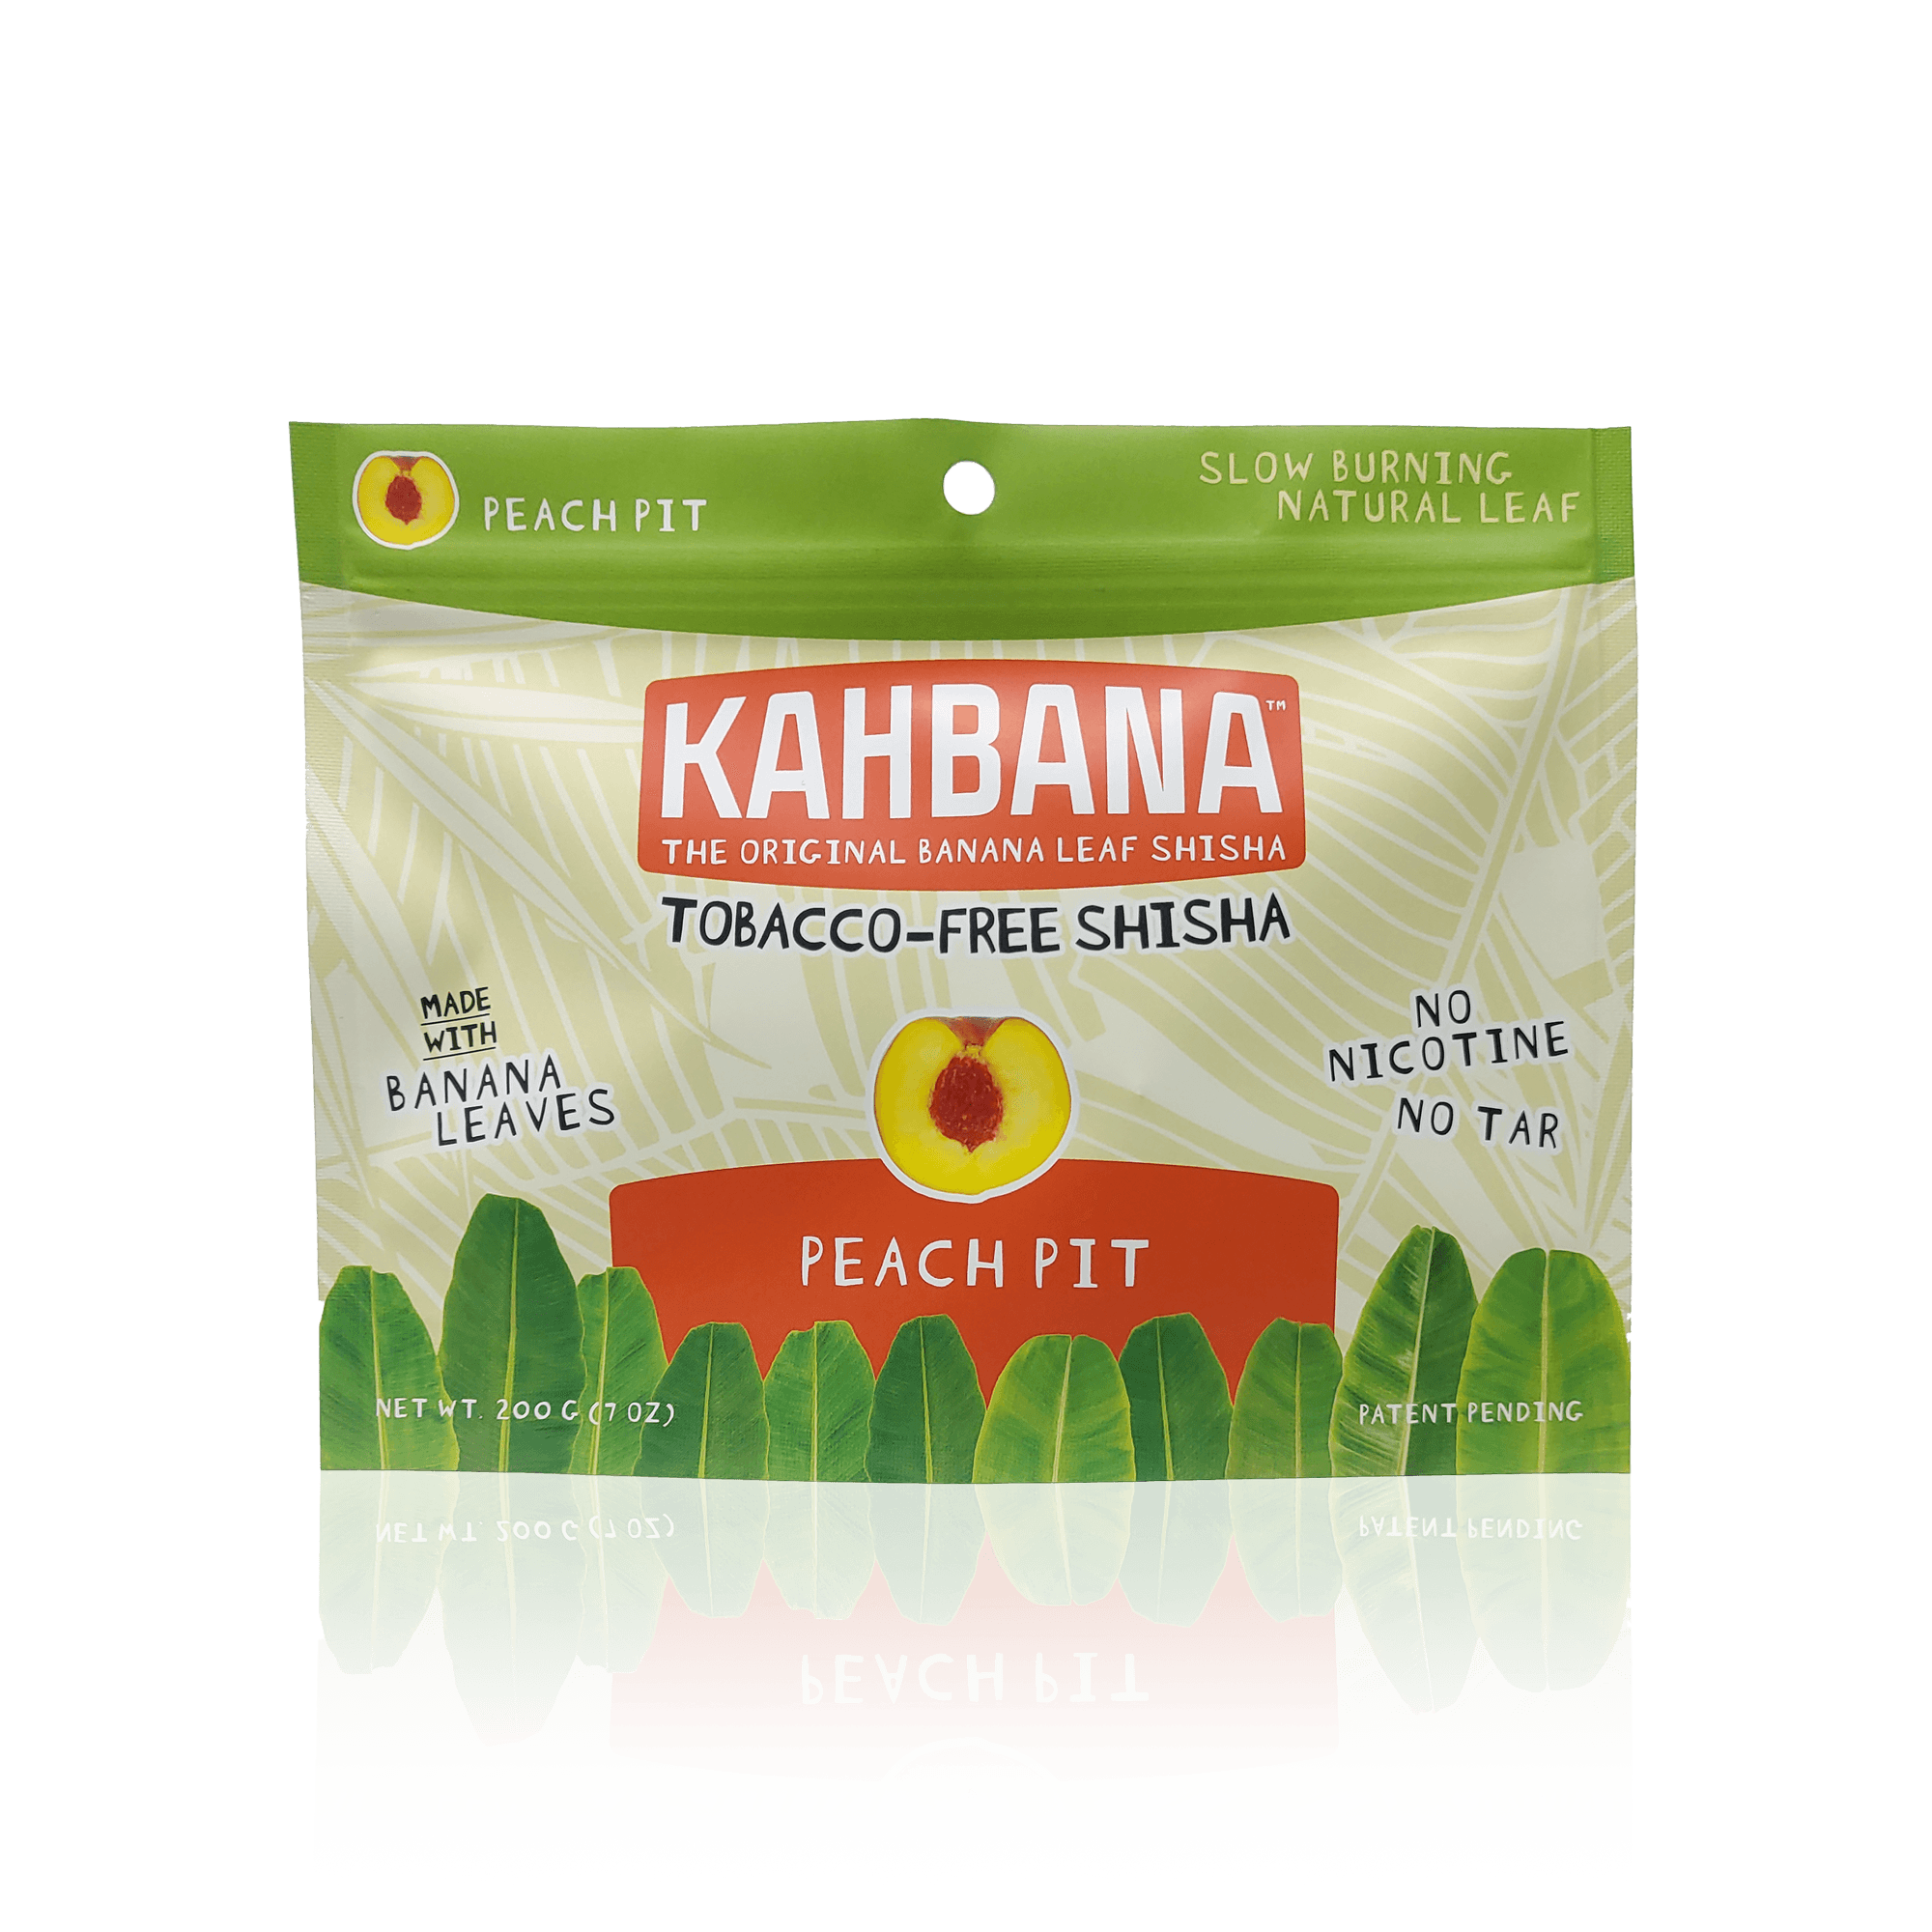 KAHBANA Original Banana Leaf Shisha Peach Pit - Lavoo